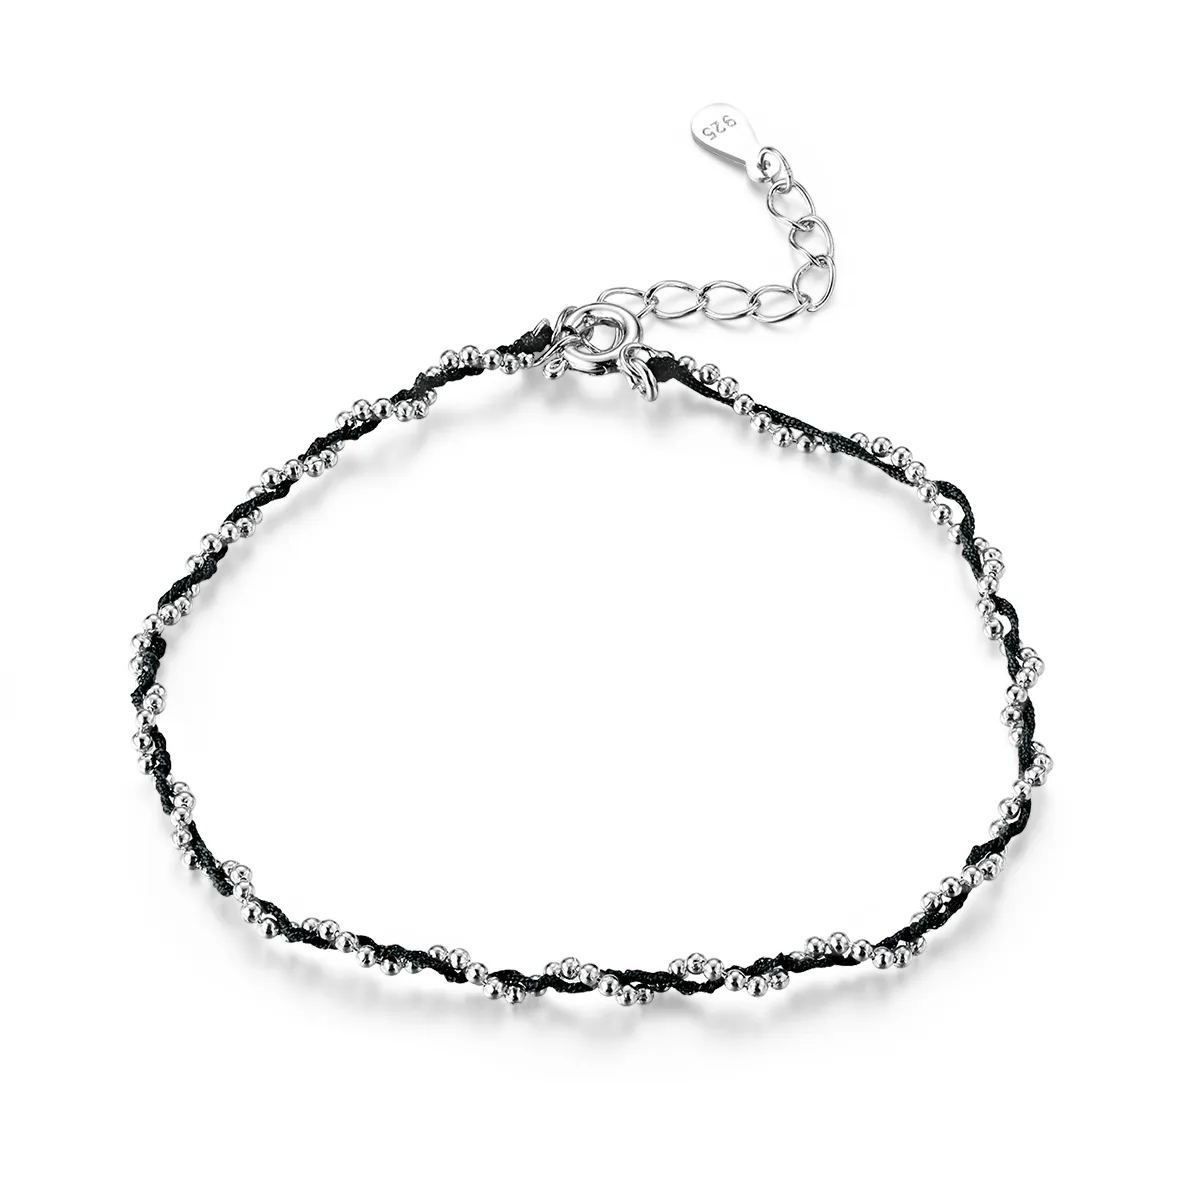 Silver & Black Rope Bracelet - SCB173-Bk